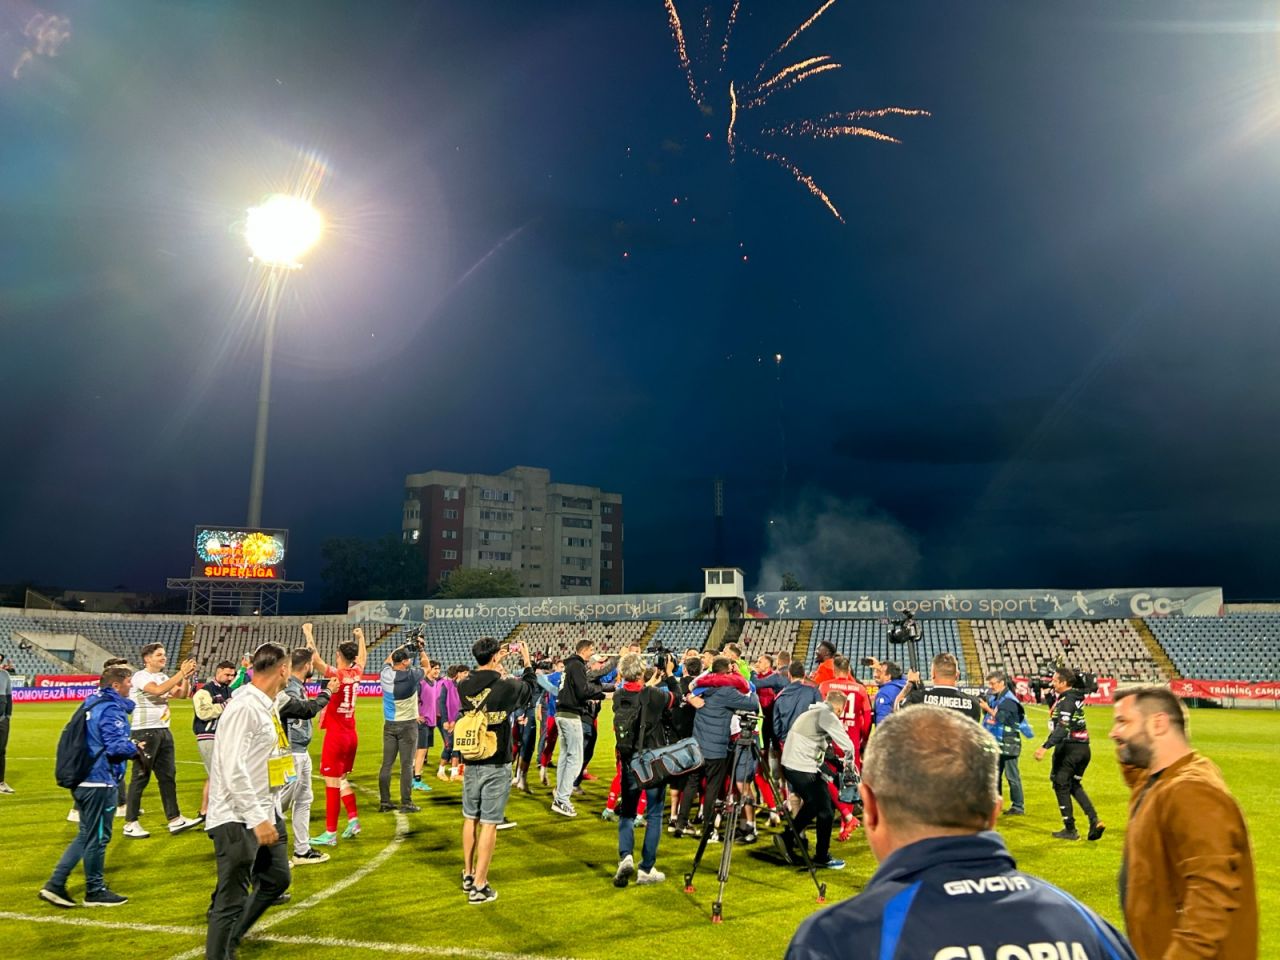 Sărbătoare la Buzău! Fotbaliștii s-au bucurat alături de fani în urma promovării istorice. Vali Dumitrache: ”Am muncit un an pentru asta”_32